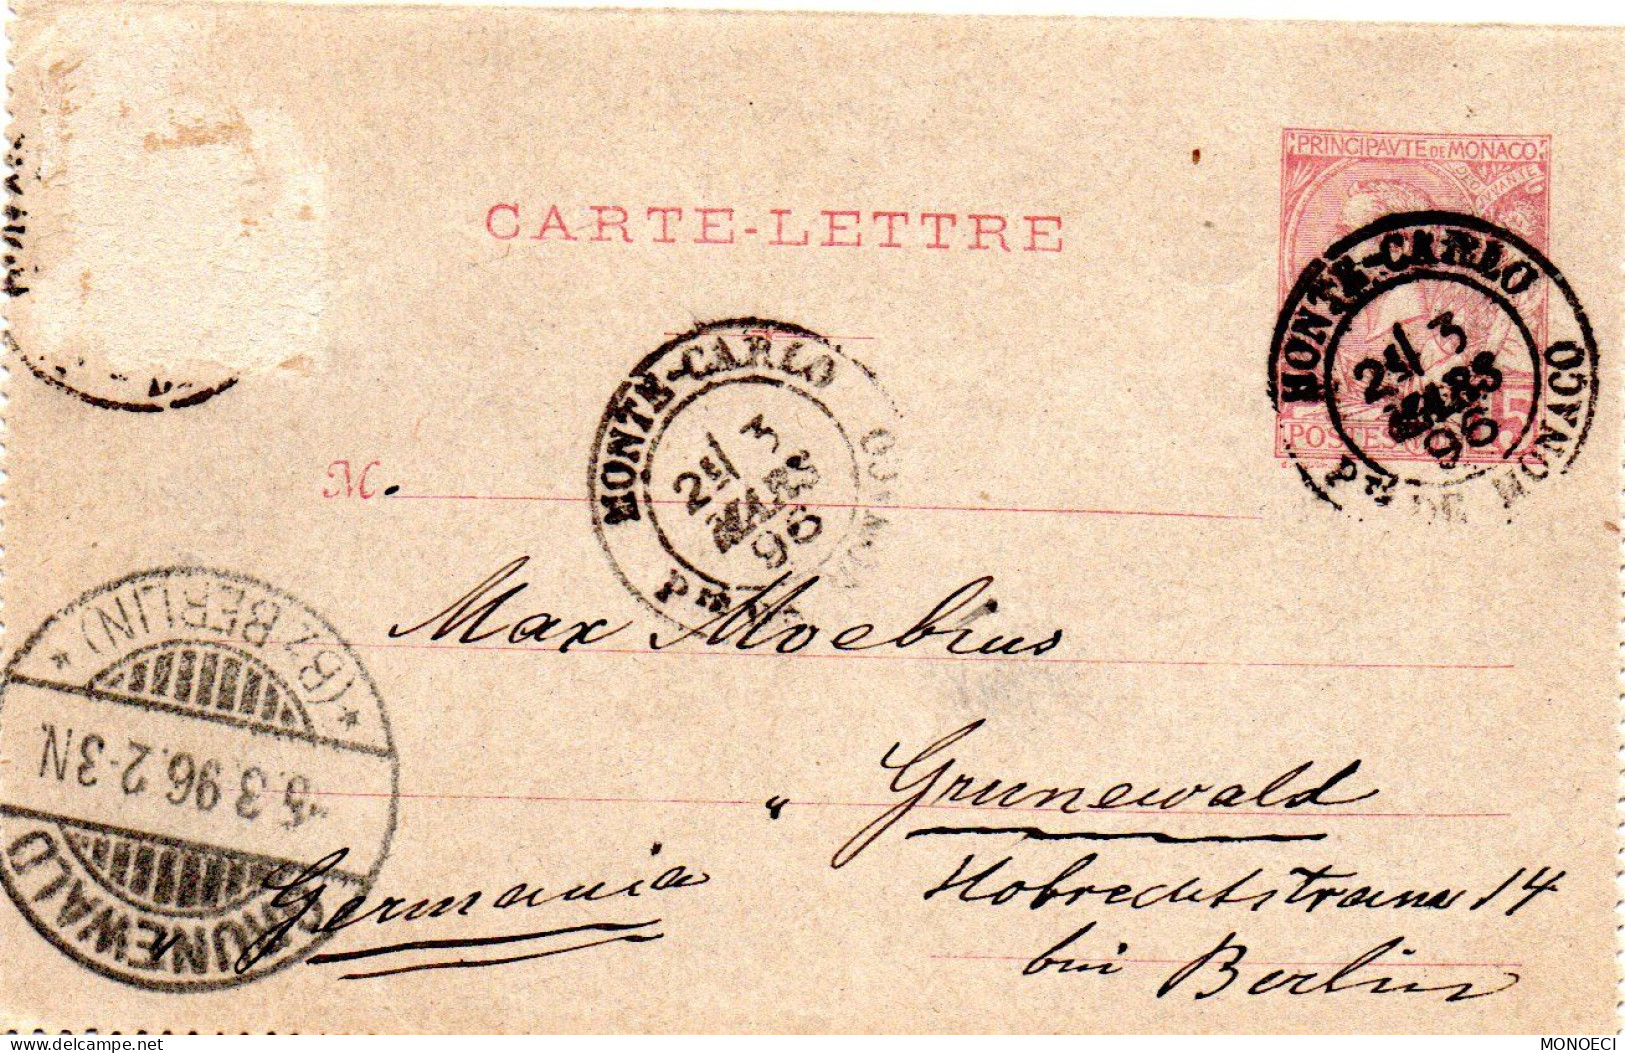 MONACO -- MONTE CARLO -- Entier Postal -- Carte Lettre -- Prince Albert 1er -- 10 C. Carmin Sur Gris (1891) - Ganzsachen